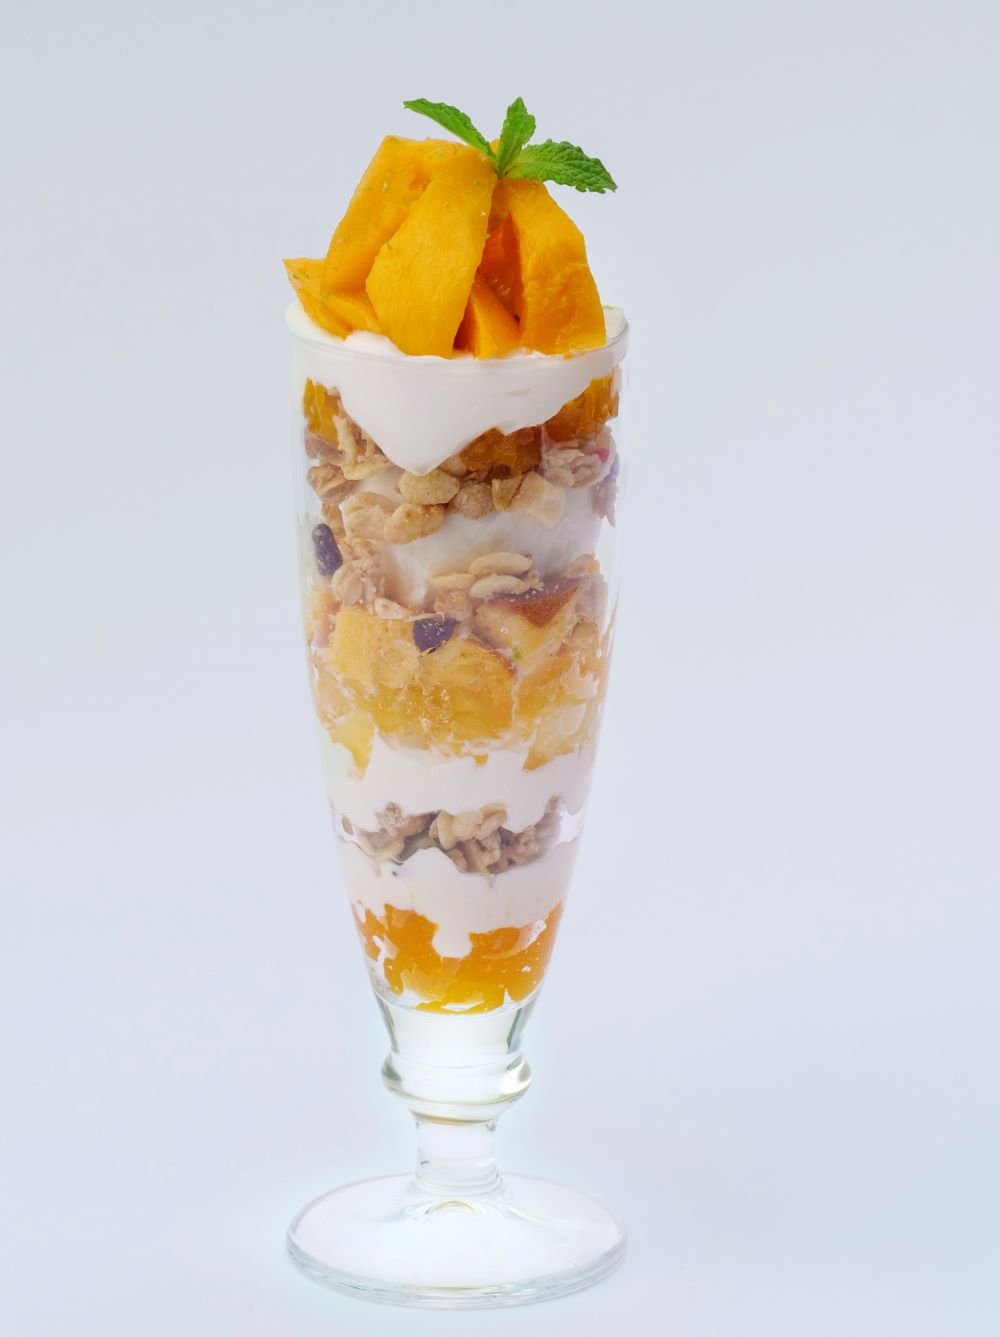 「ユニオン スクエア トウキョウ」よりイートイン提供の「Mango & Frozen Pineapple Parfait」税込み1,800円